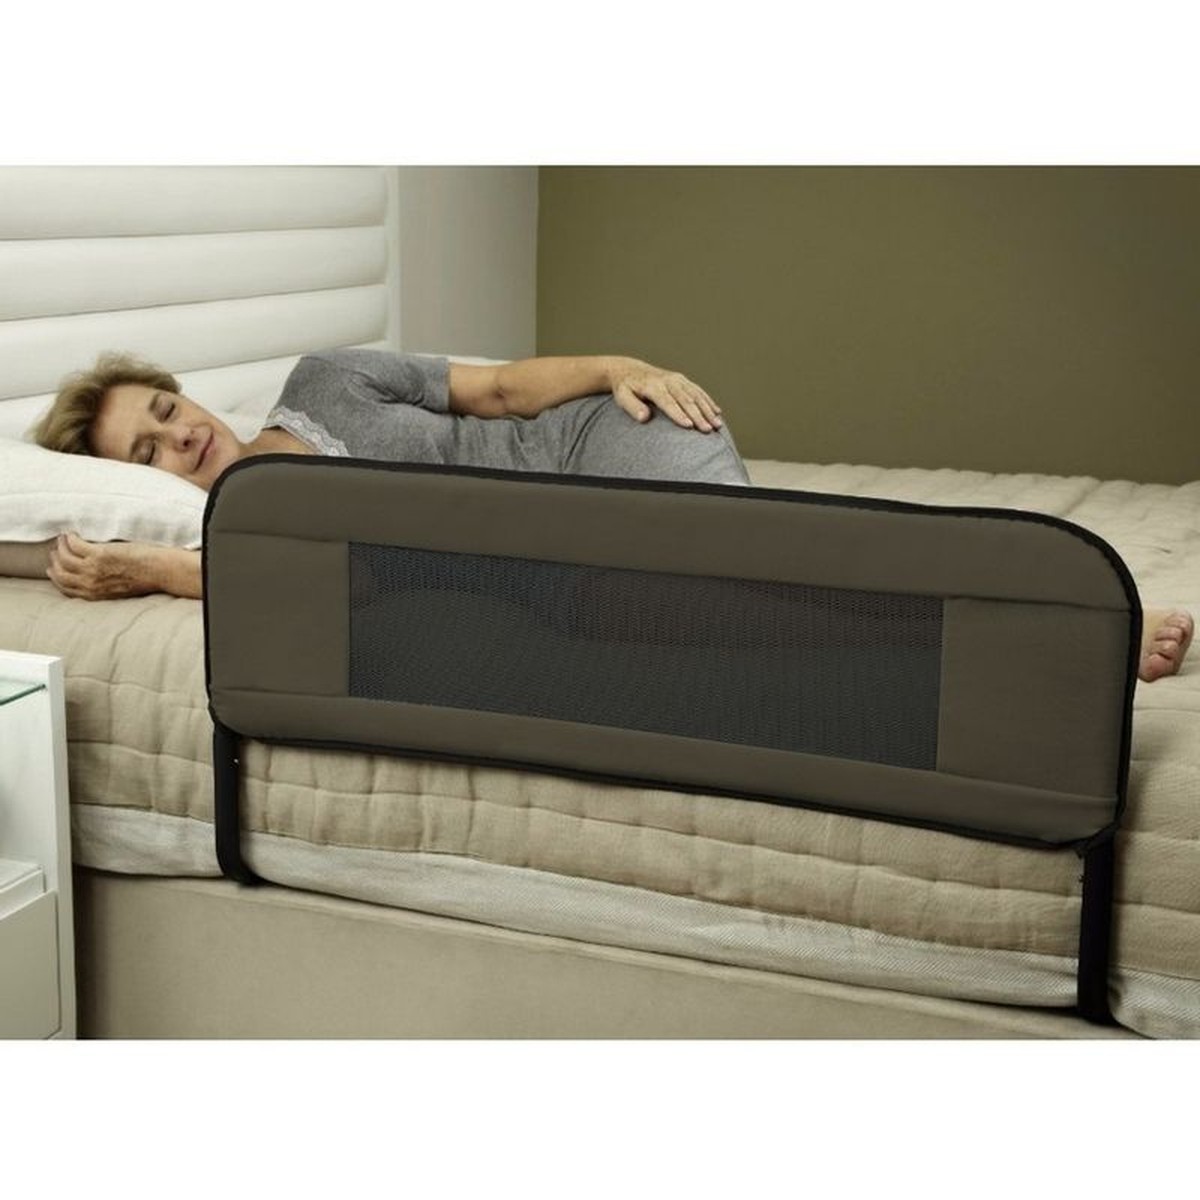 Foto do produto Grade de proteção (barra de apoio) Senior Sleep Copespuma